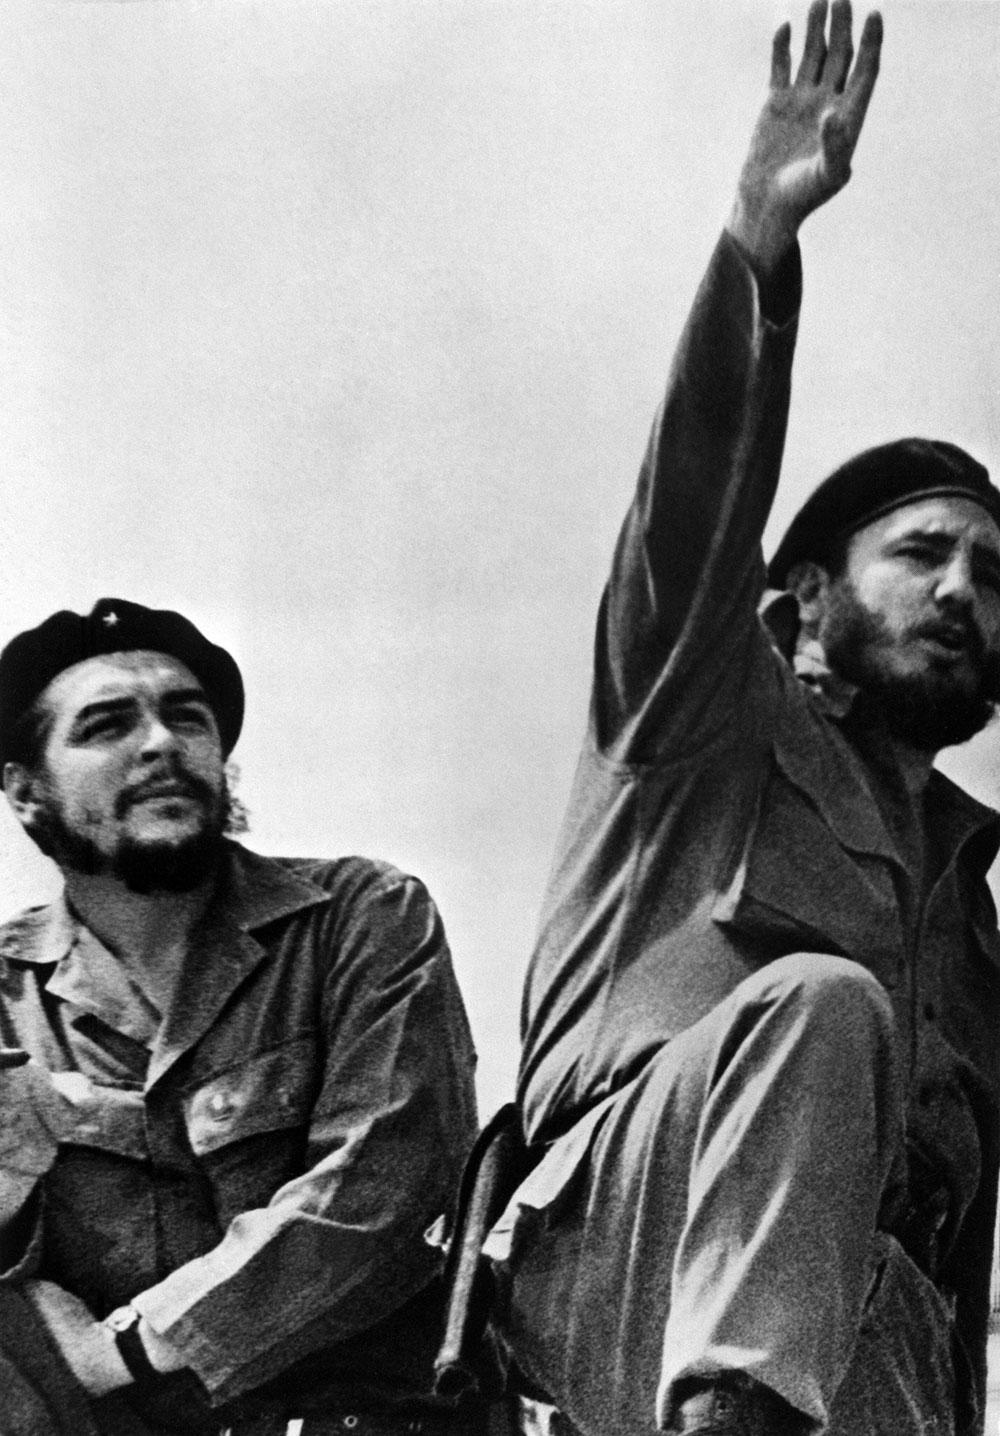 ”Castro är inte som vilken annan diktator som helst i Latinamerika, en småaktig tyrann som drivs av makt. Hans anspråk sträcker sig betydligt längre än så”, sade
USA:s tidigare president John F Kennedy 1962.